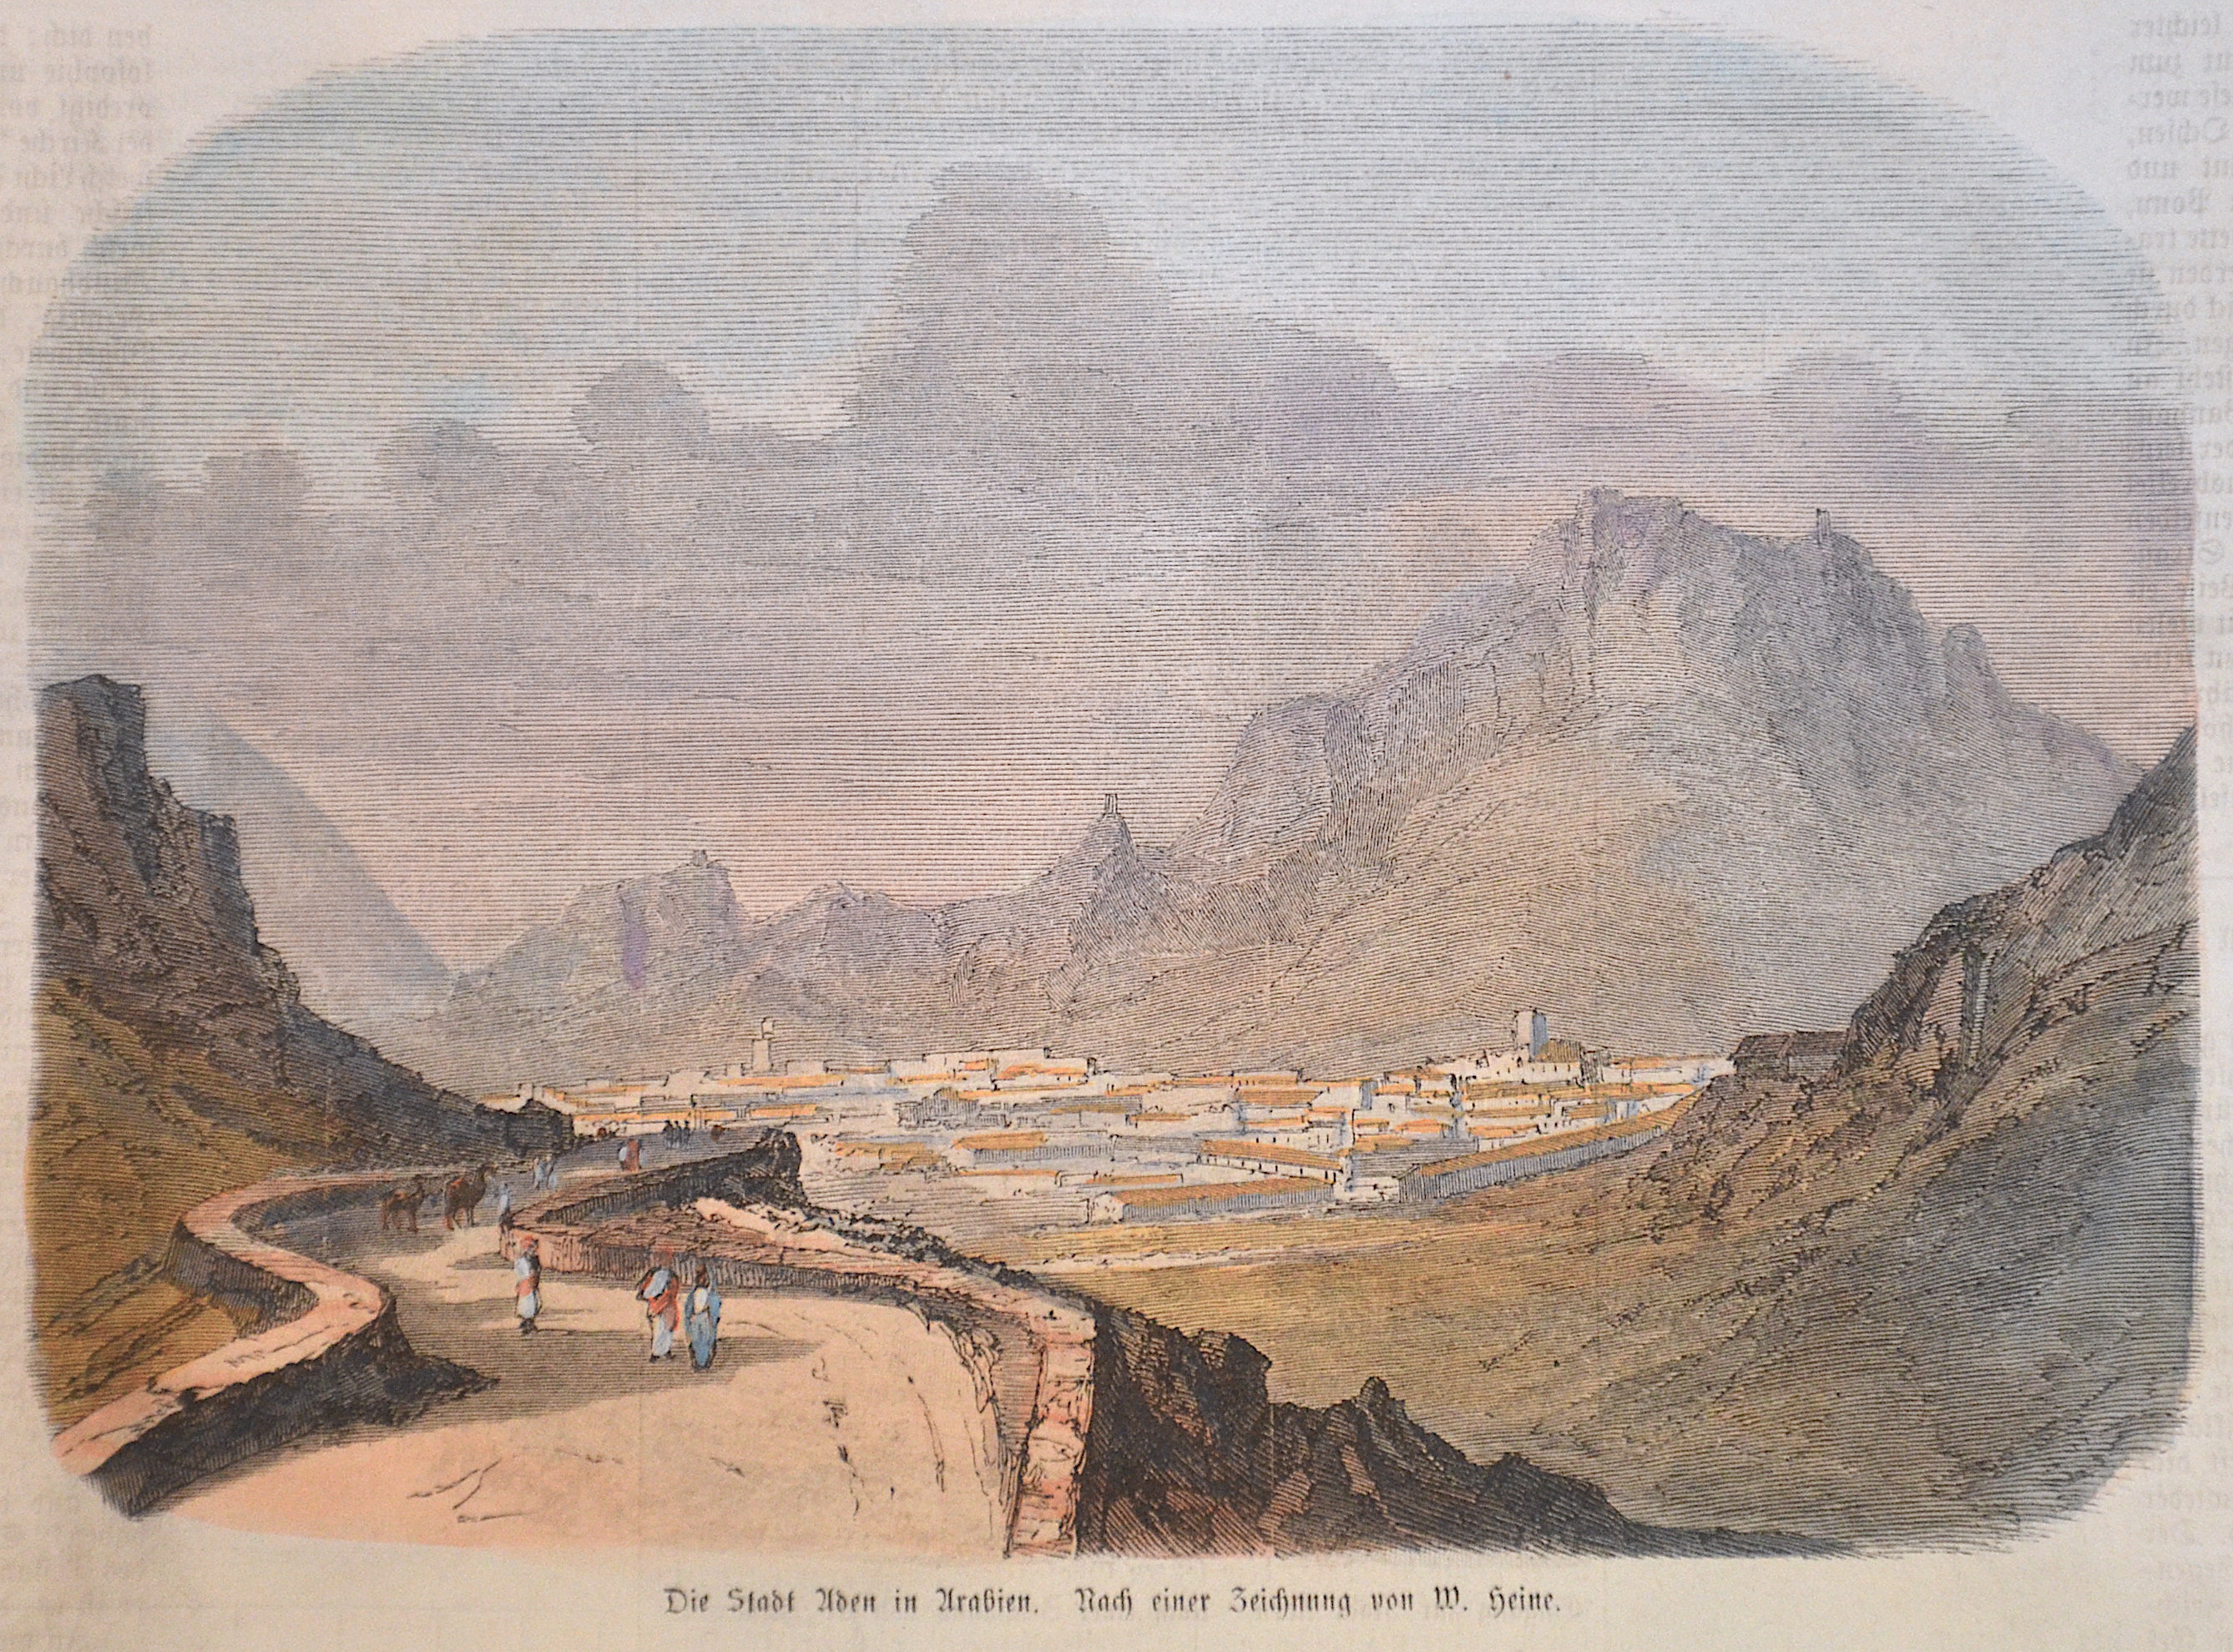 Heine W. Die Stadt Aden in Arabien. Nach einer Zeichnung von W. Heine.